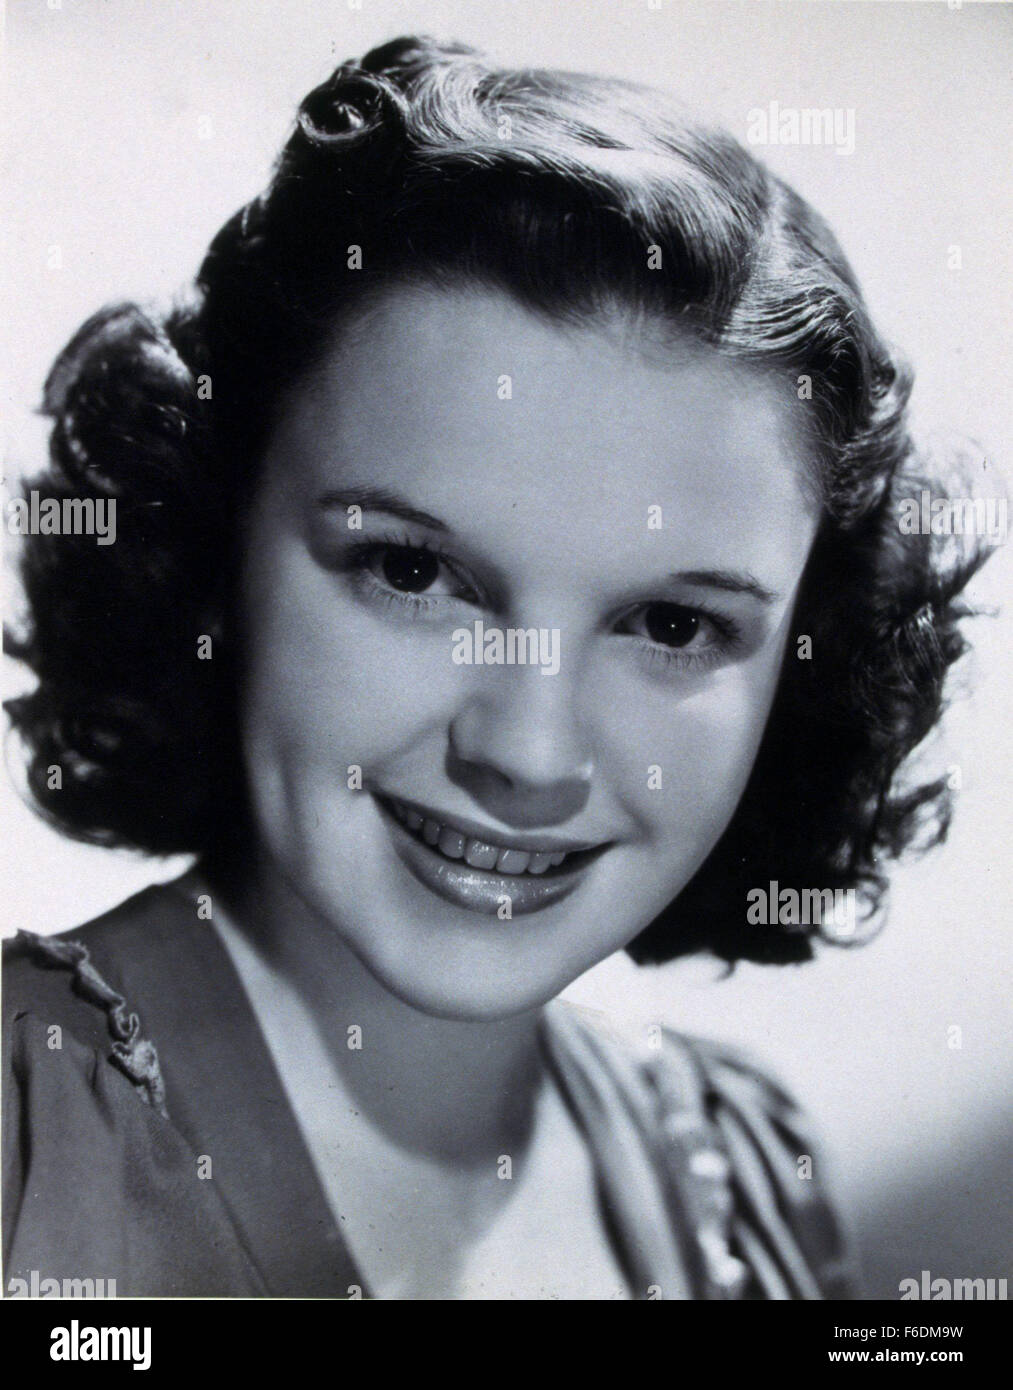 1. Juni 1939 war - Hollywood, Kalifornien, USA - JUDY GARLAND (geb. Frances Ethel Gumm), eine amerikanische Schauspielerin und Sängerin. Durch eine Karriere erreicht, dass übergreifende 45 ihrer 47 Jahre Garland internationalem Ruhm als Schauspielerin in musikalischen und dramatischen Rollen als Musikerin und auf der Konzertbühne. Für ihre Vielseitigkeit respektiert, sie erhielt eine Juvenile Academy Award, gewann einen Golden Globe Award, erhielt den Cecil B. DeMille Award für ihre Arbeit in Filmen, sowie Grammy Awards und einen Tony Award. Nach einem Auftritt im Varieté mit ihren Schwestern, wurde Garland zu Metro-Goldwyn-Mayer als eine Teenag unterzeichnet. Stockfoto